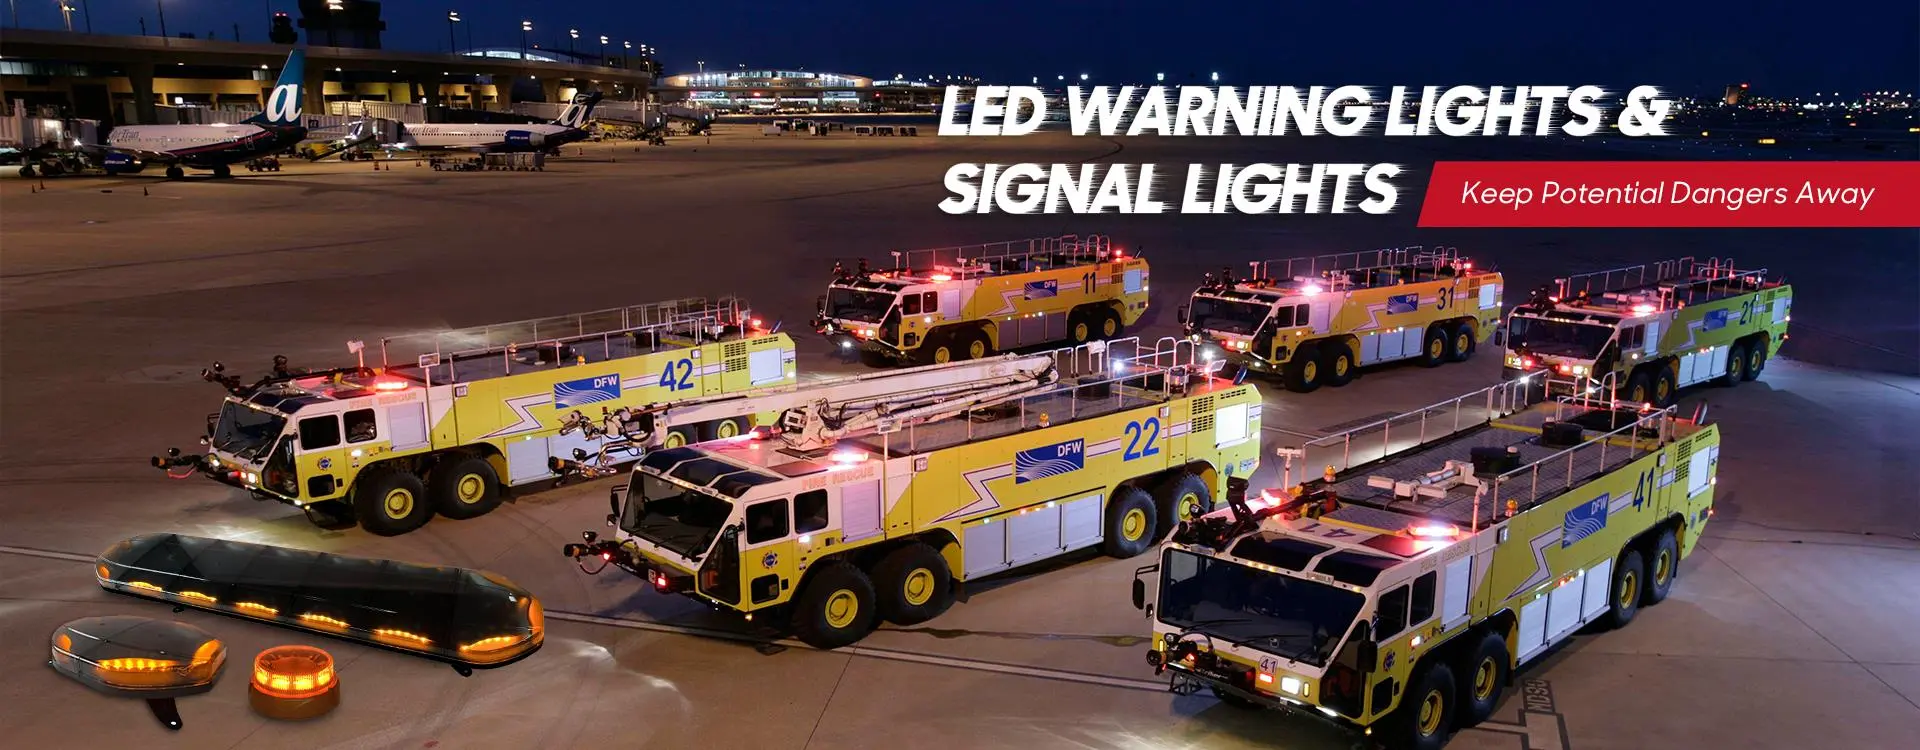 Luces LED de advertencia y luces de señal